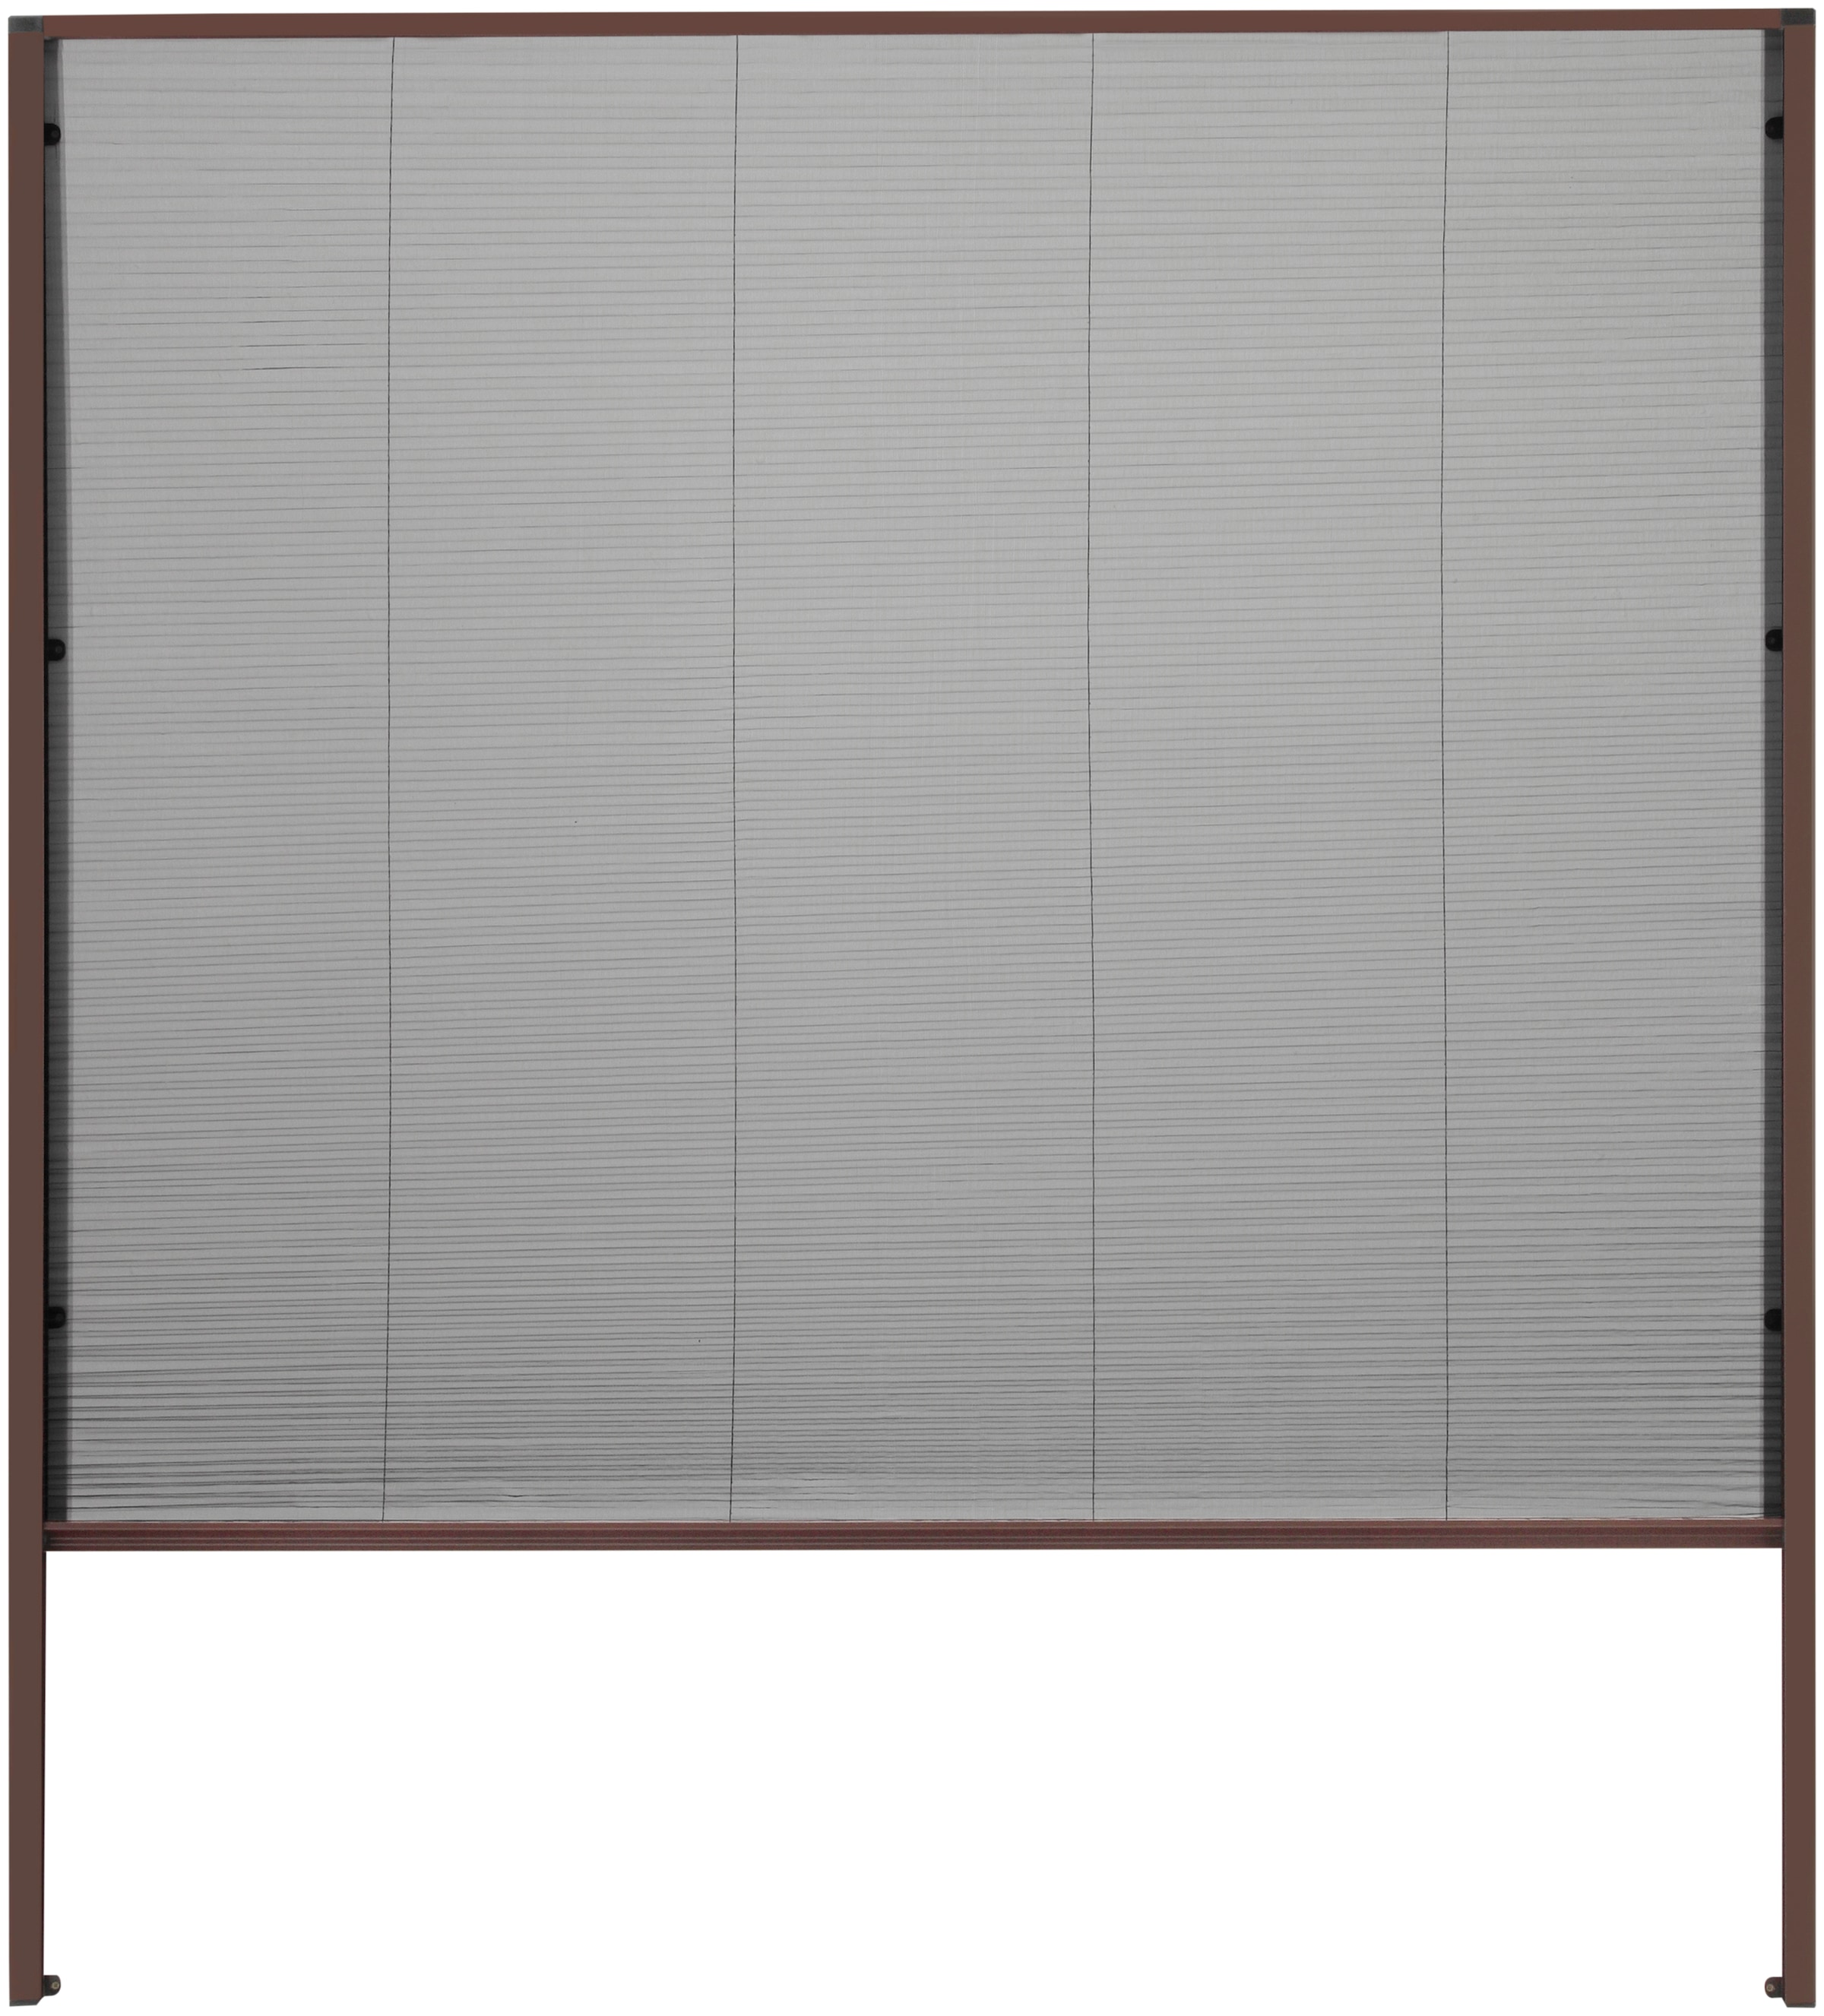 Insektenschutzrollo »für Dachfenster«, transparent, braun/schwarz, BxH: 160x180 cm